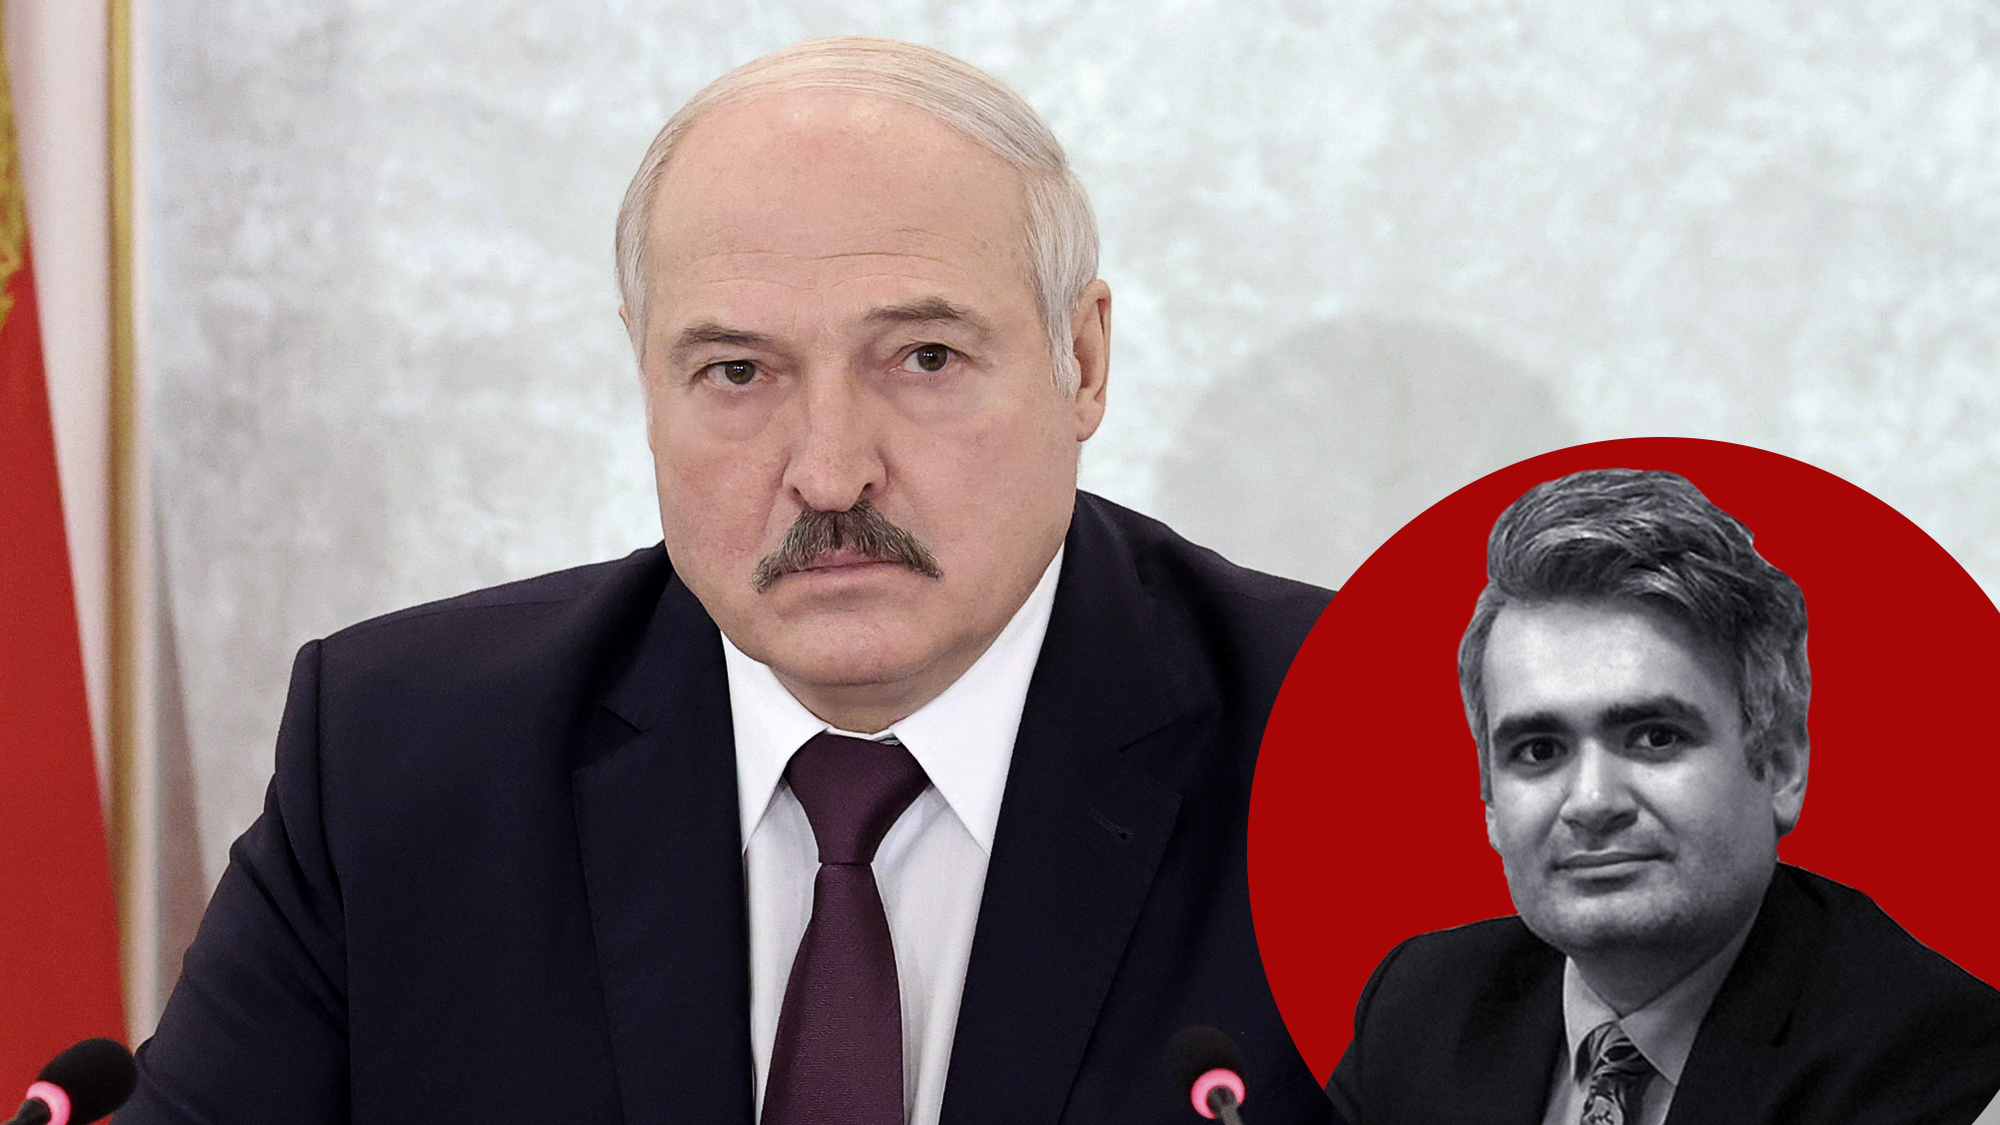 Организация вооружённого мятежа: как белорусские СМИ подают историю о покушении на Лукашенко